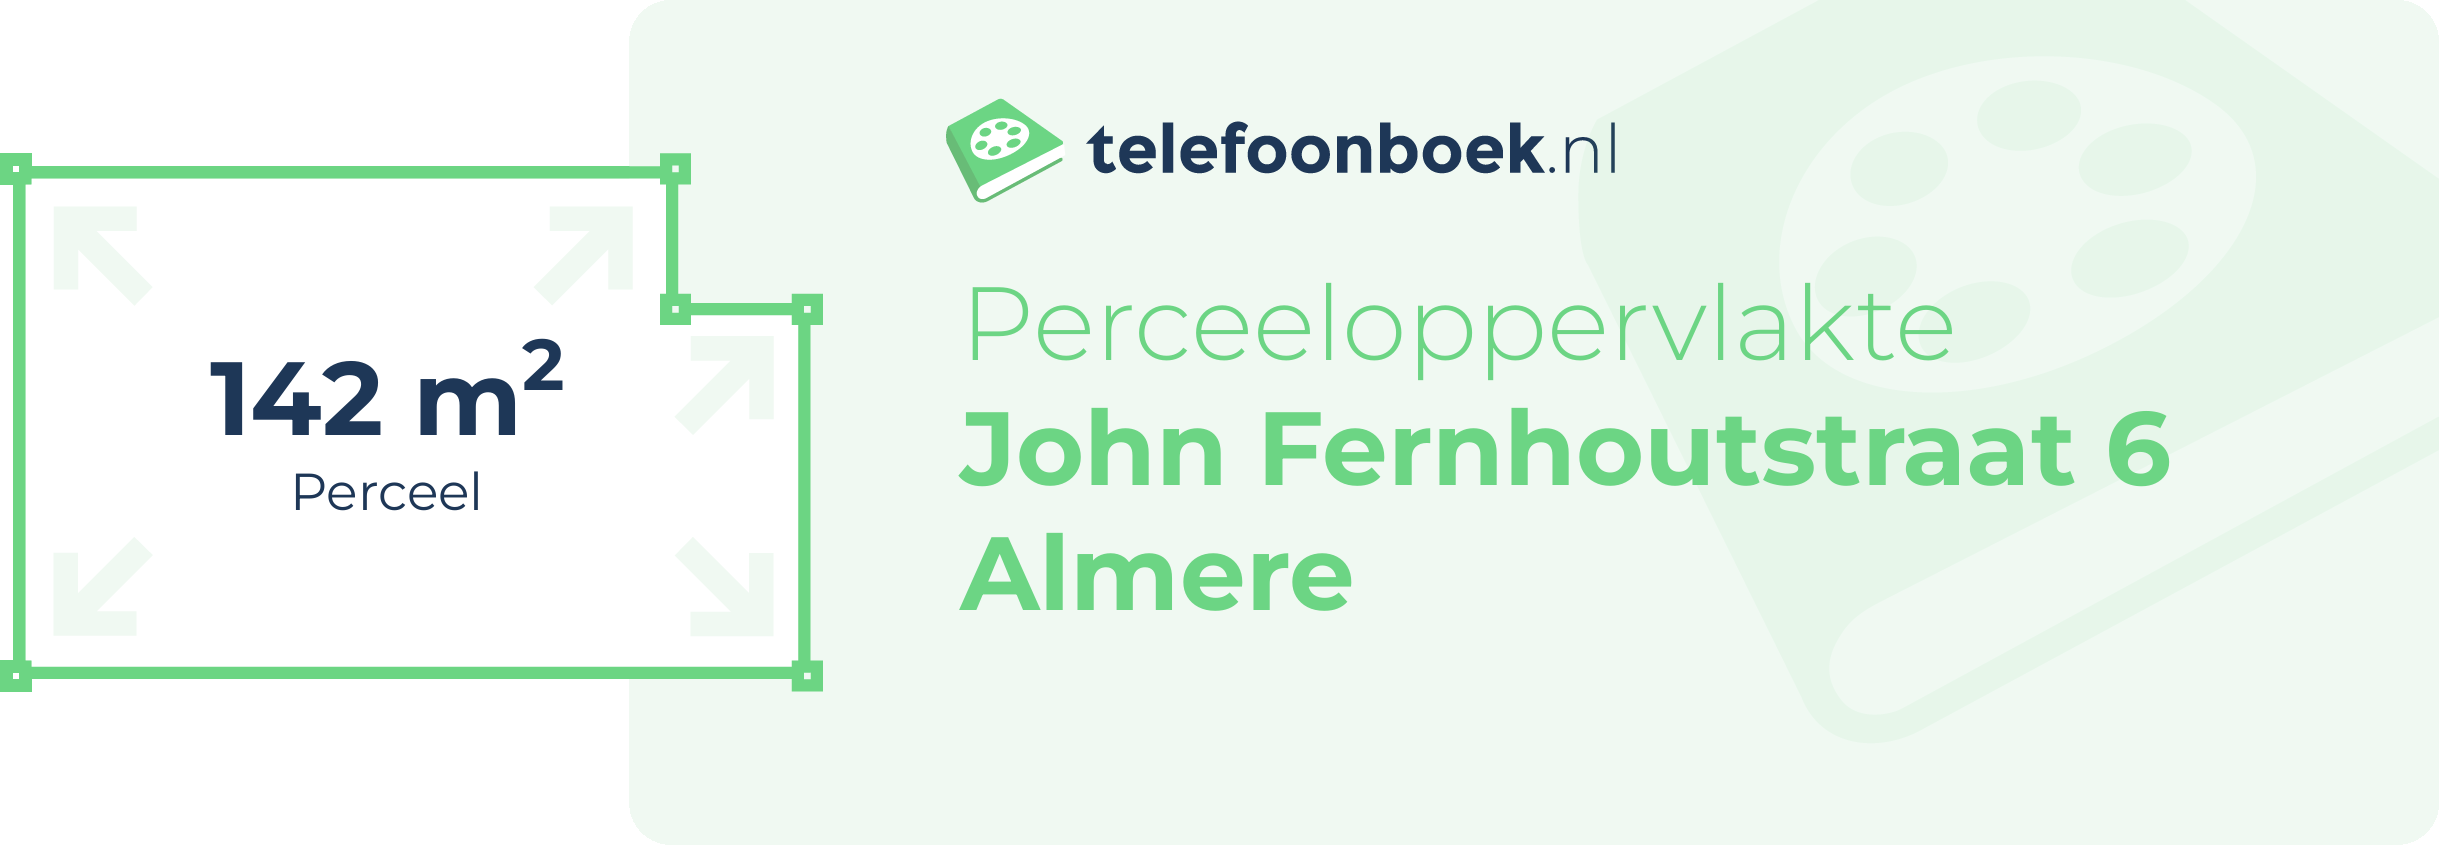 Perceeloppervlakte John Fernhoutstraat 6 Almere